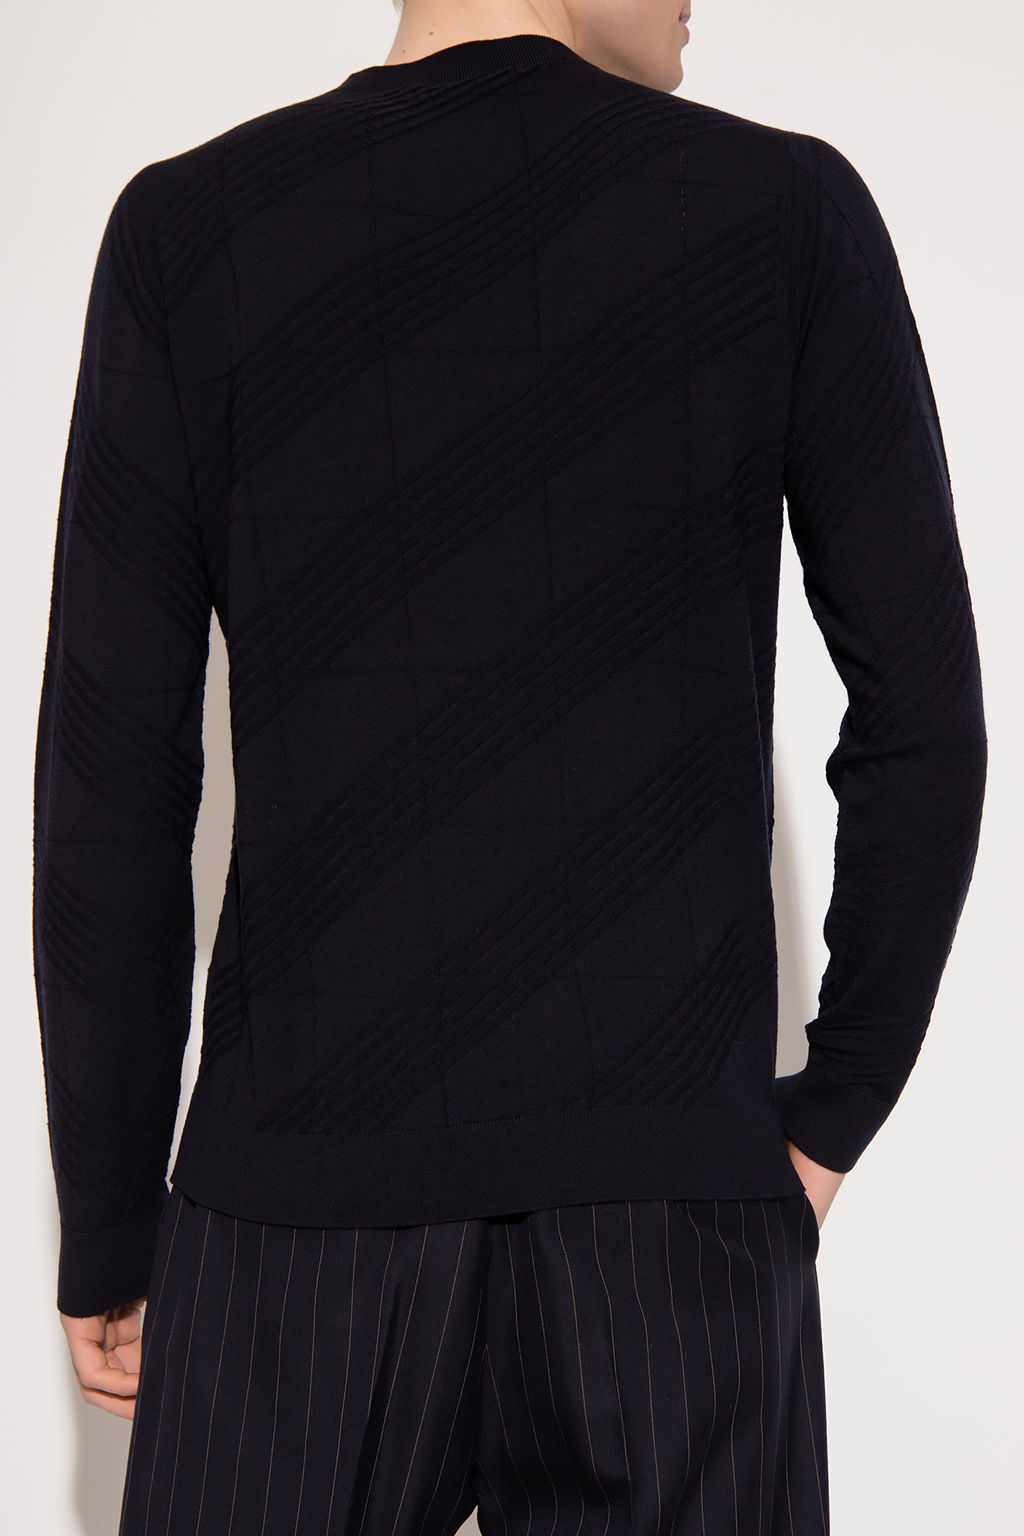 Giorgio Orange armani Wool sweater